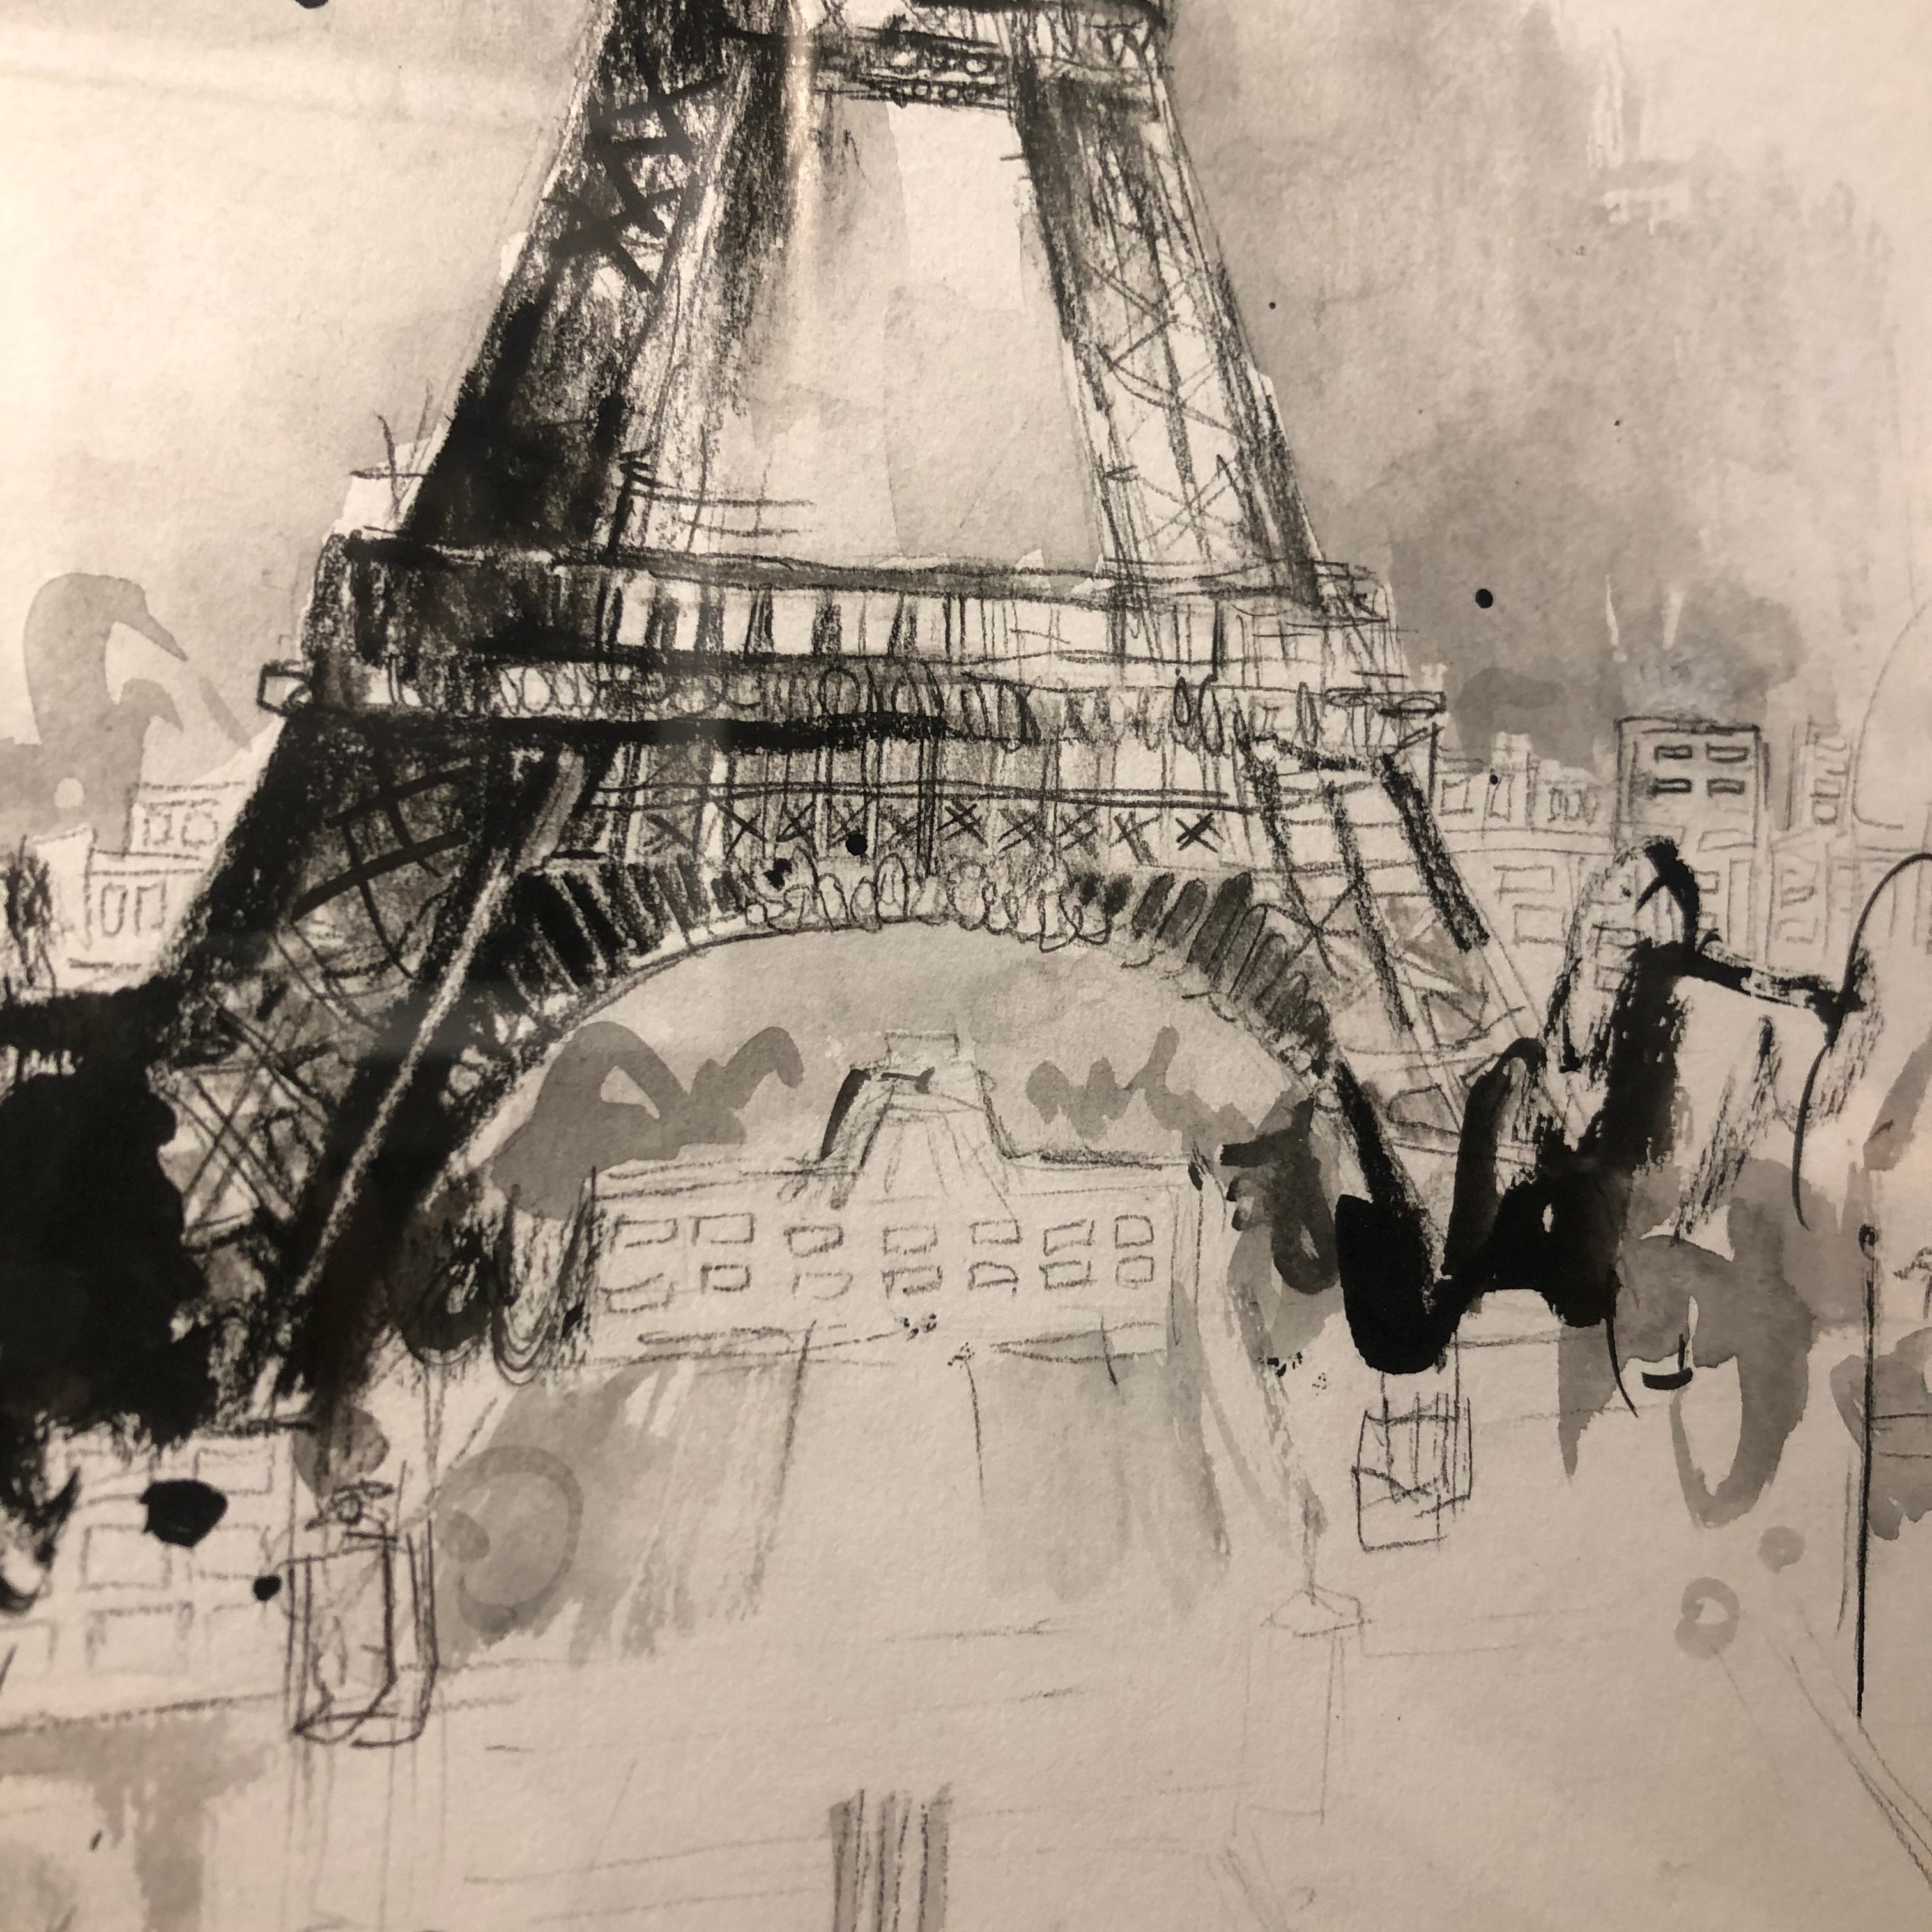 Eiffel Tower, Paris Sketch III by Anna Gammans